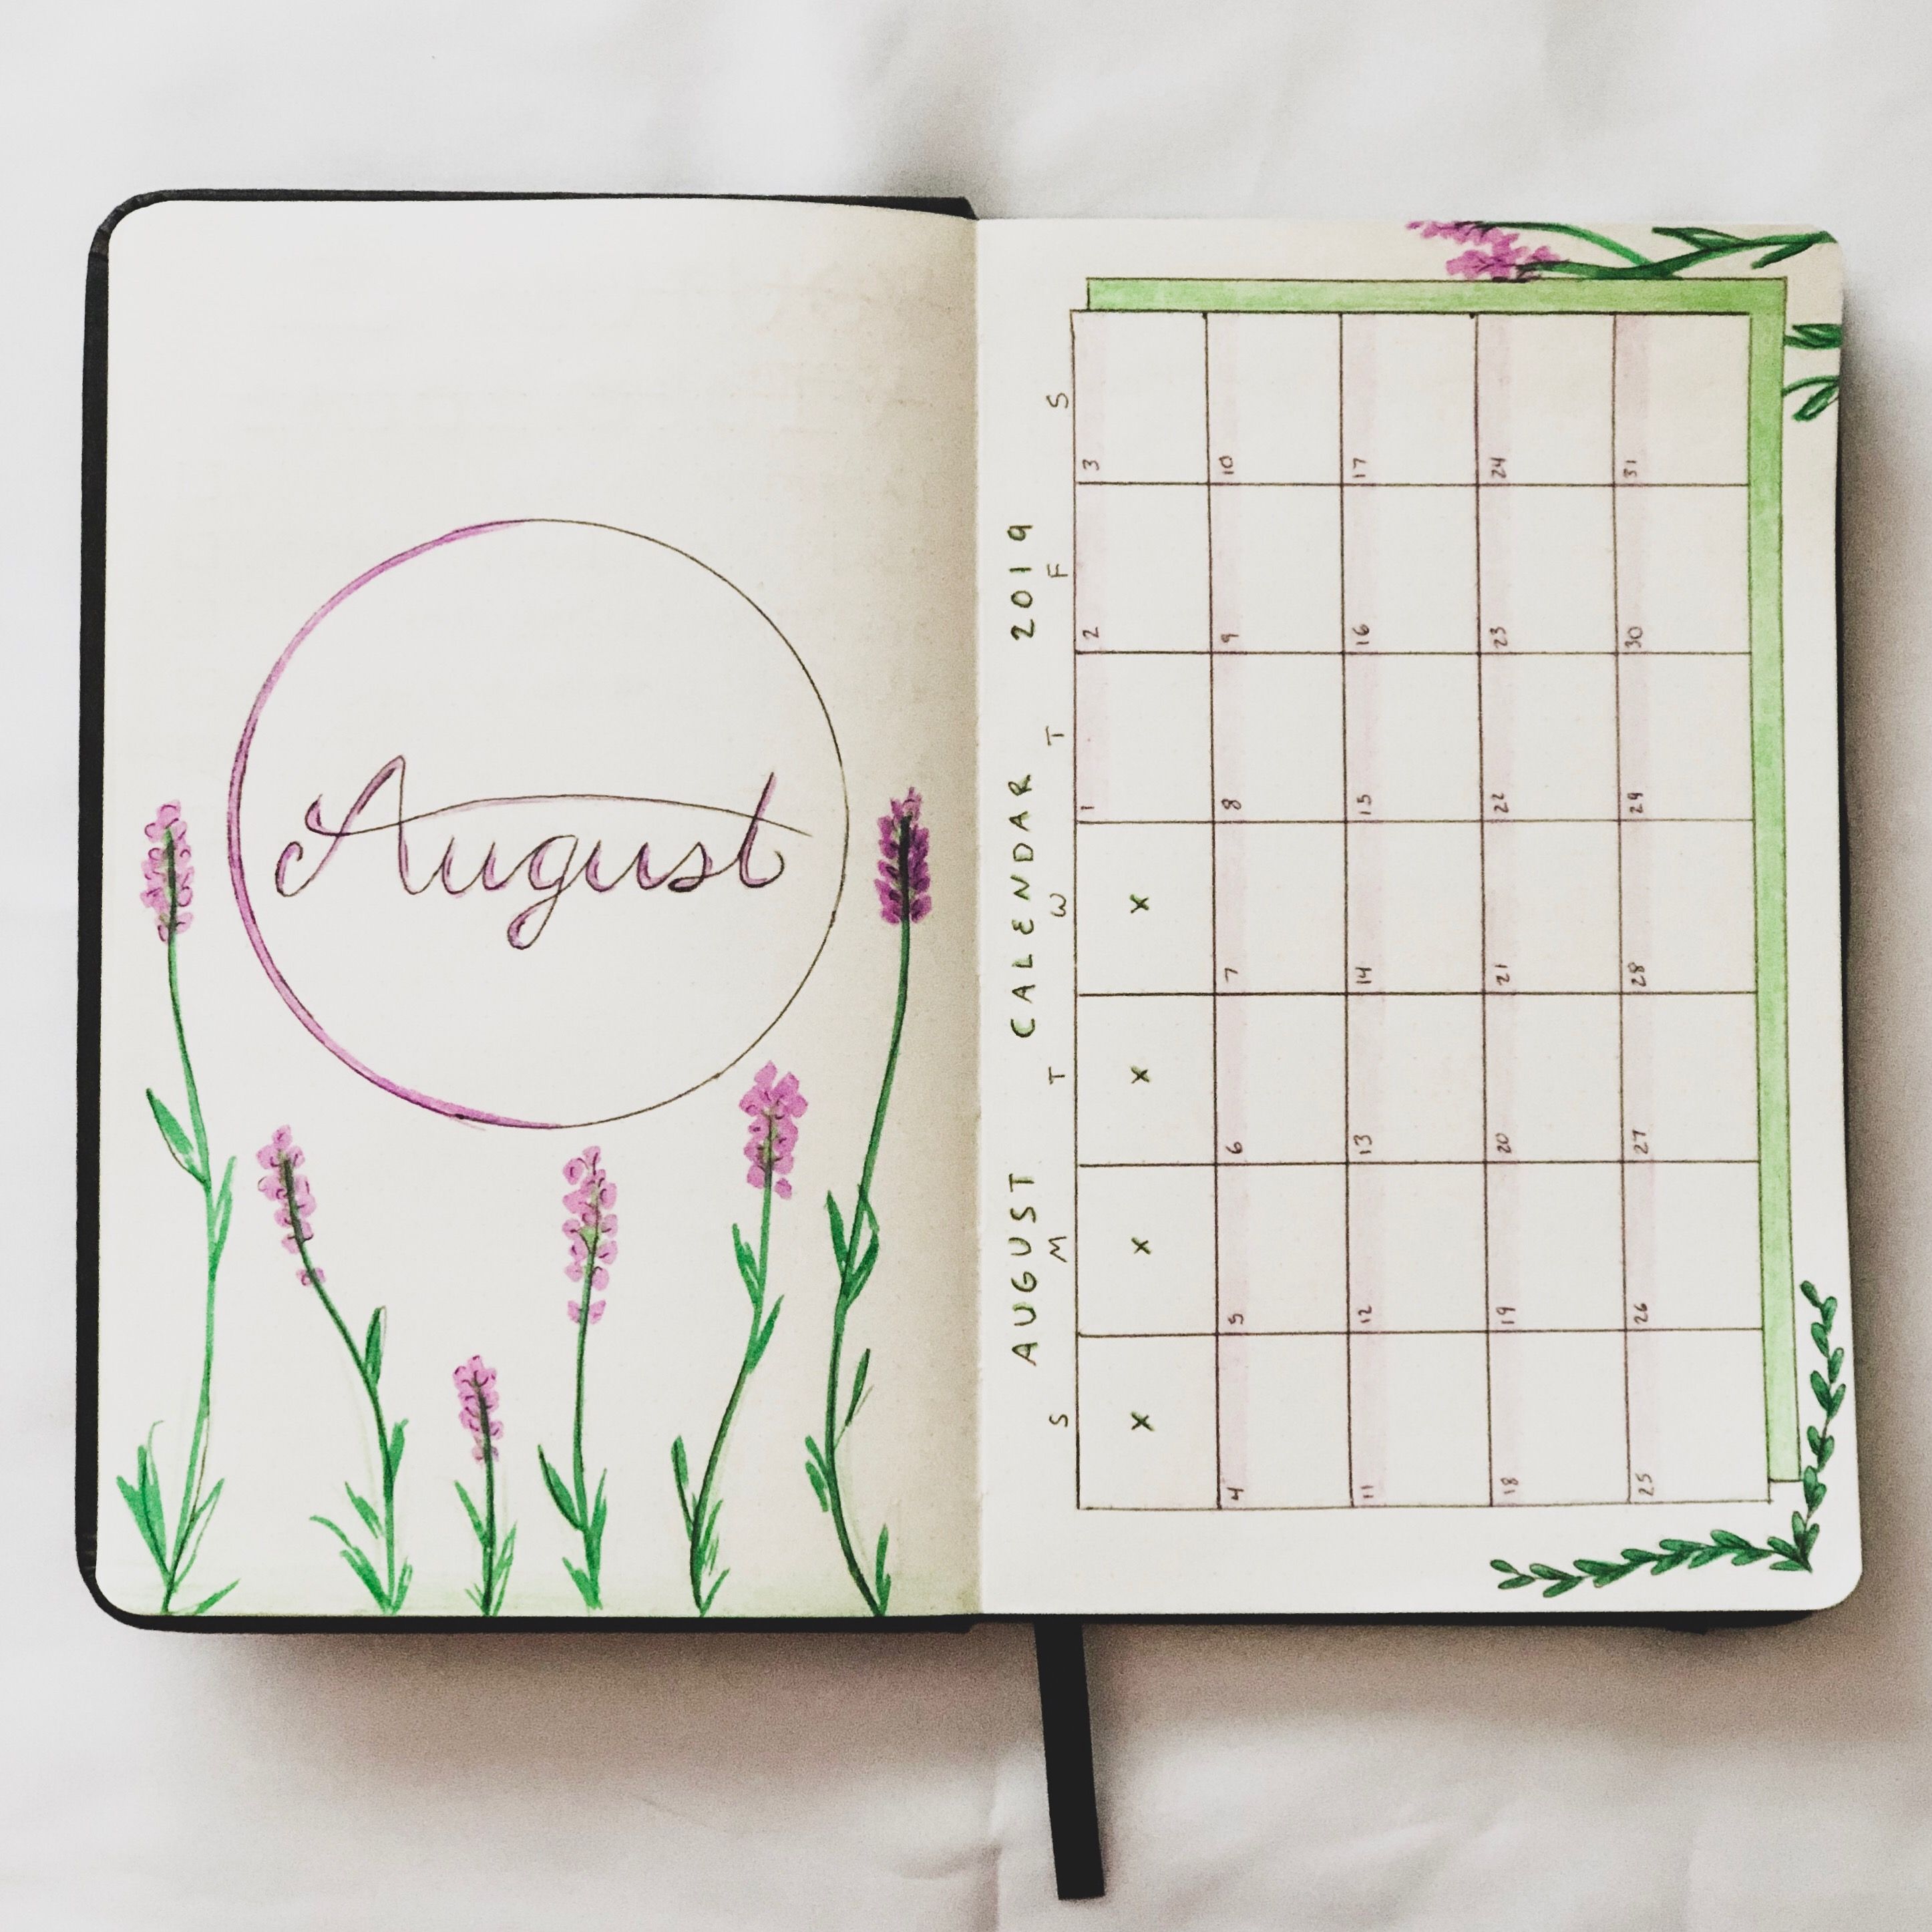 august bullet journal calendar idea